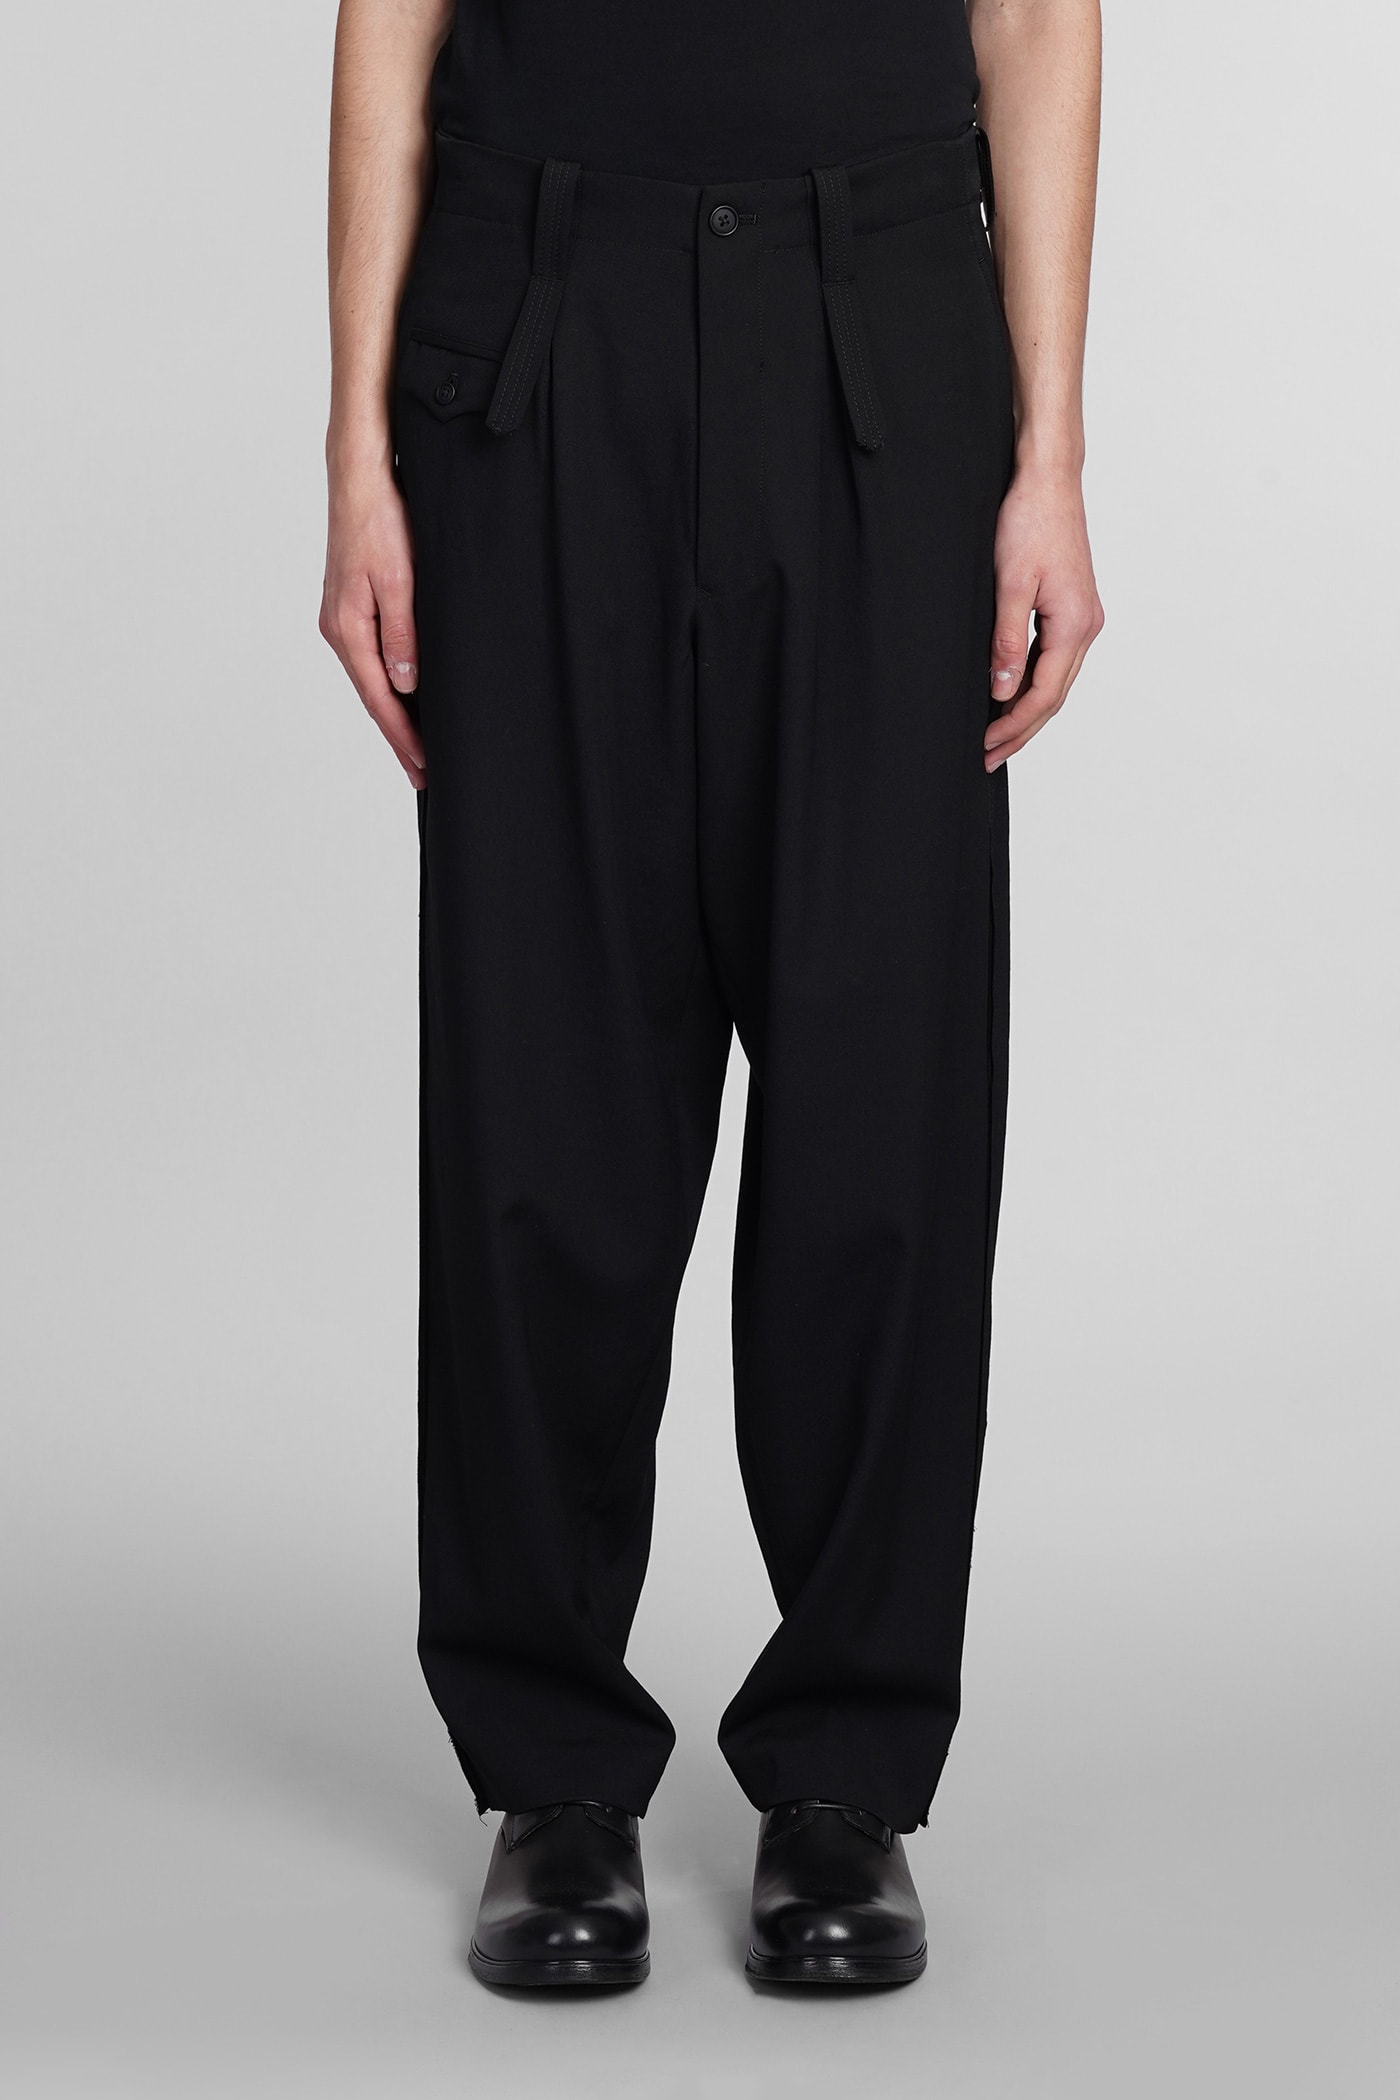 Yohji Yamamoto Pants In Black Wool